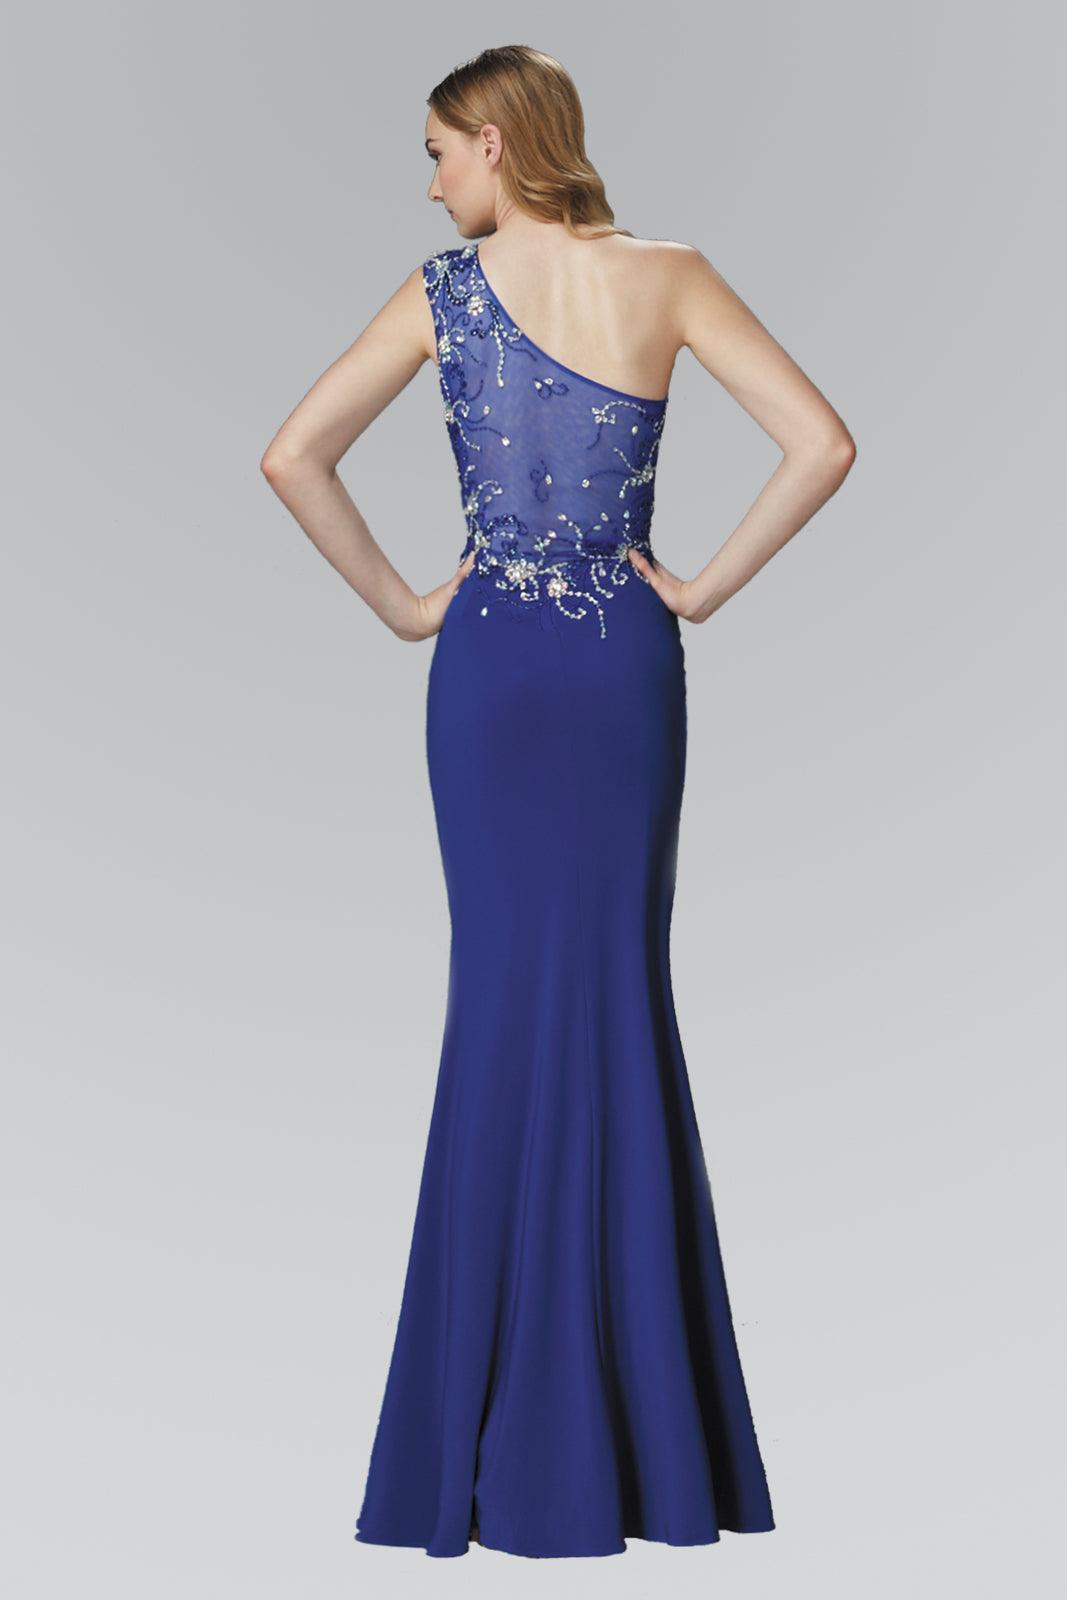 Prom Long Beaded One Shoulder Formal Evening Dress - The Dress Outlet Elizabeth K